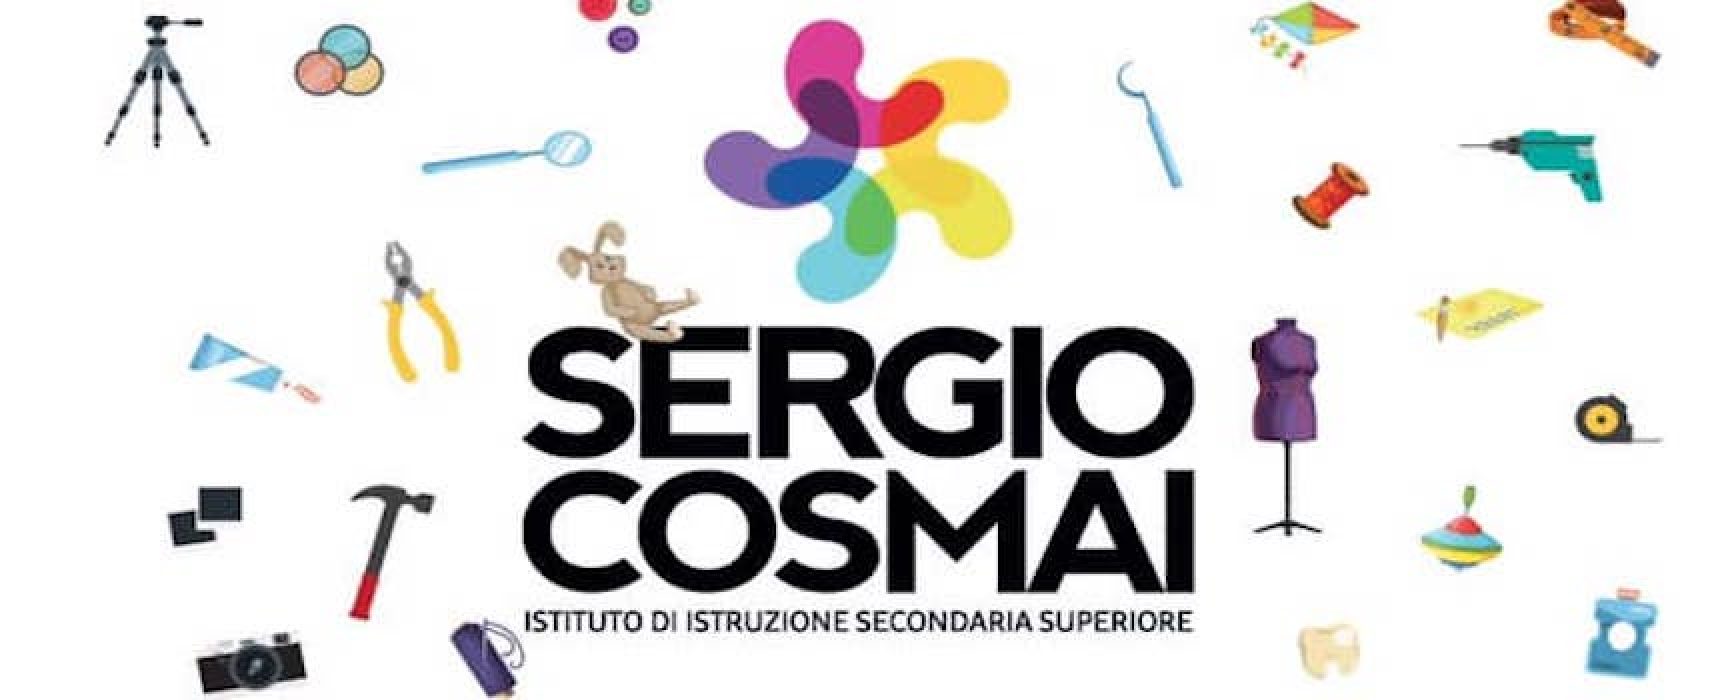 L’Istituto Sergio Cosmai aderisce alle due campagne #ioleggoperché e Libriamoci